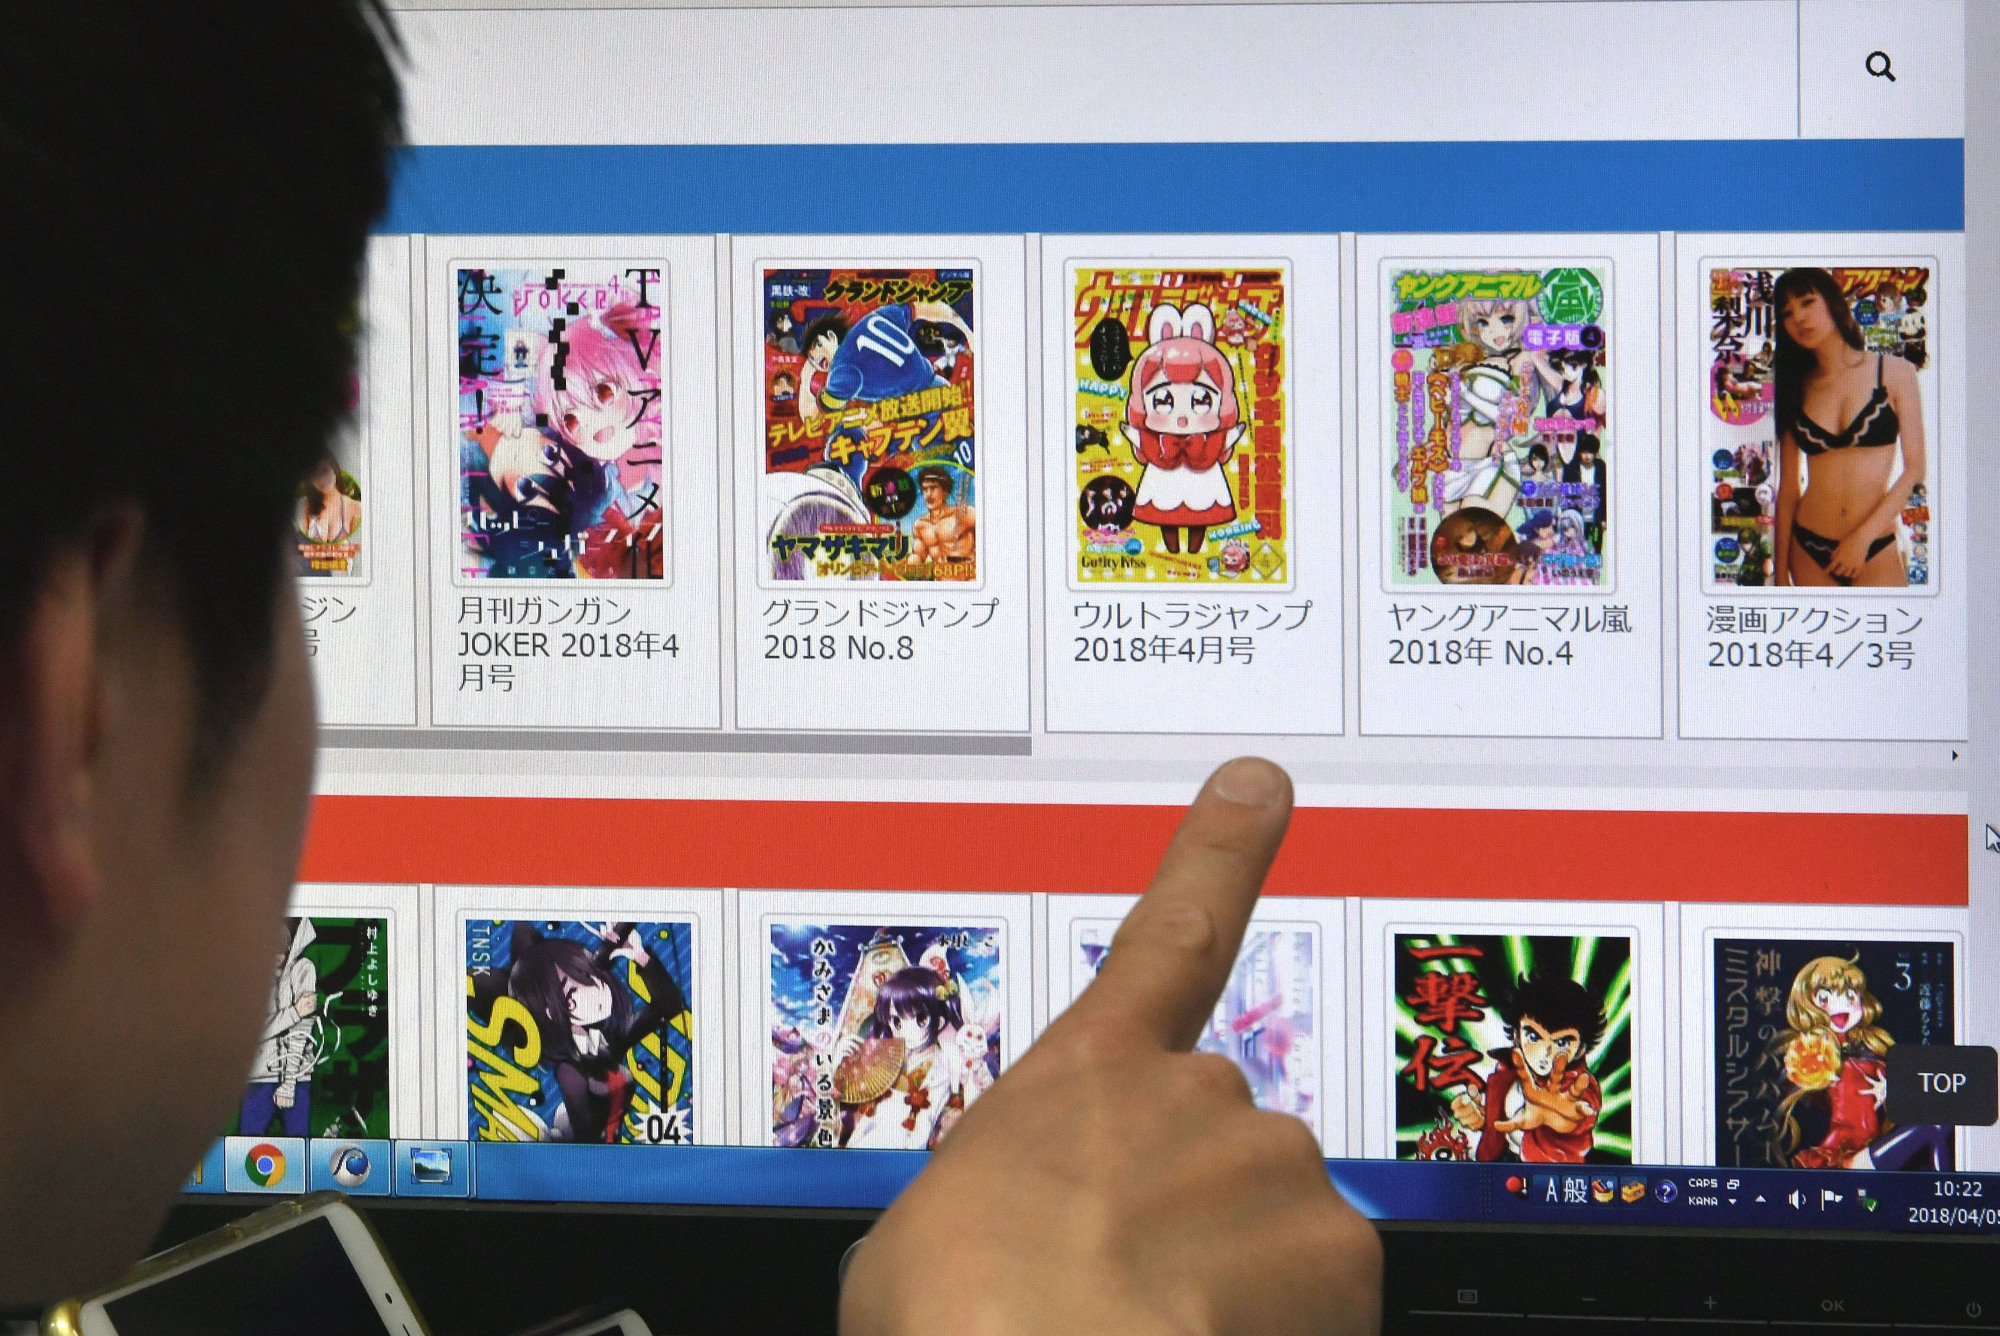 Página com streaming ilegal de animes, AniTube é vendida e sai do